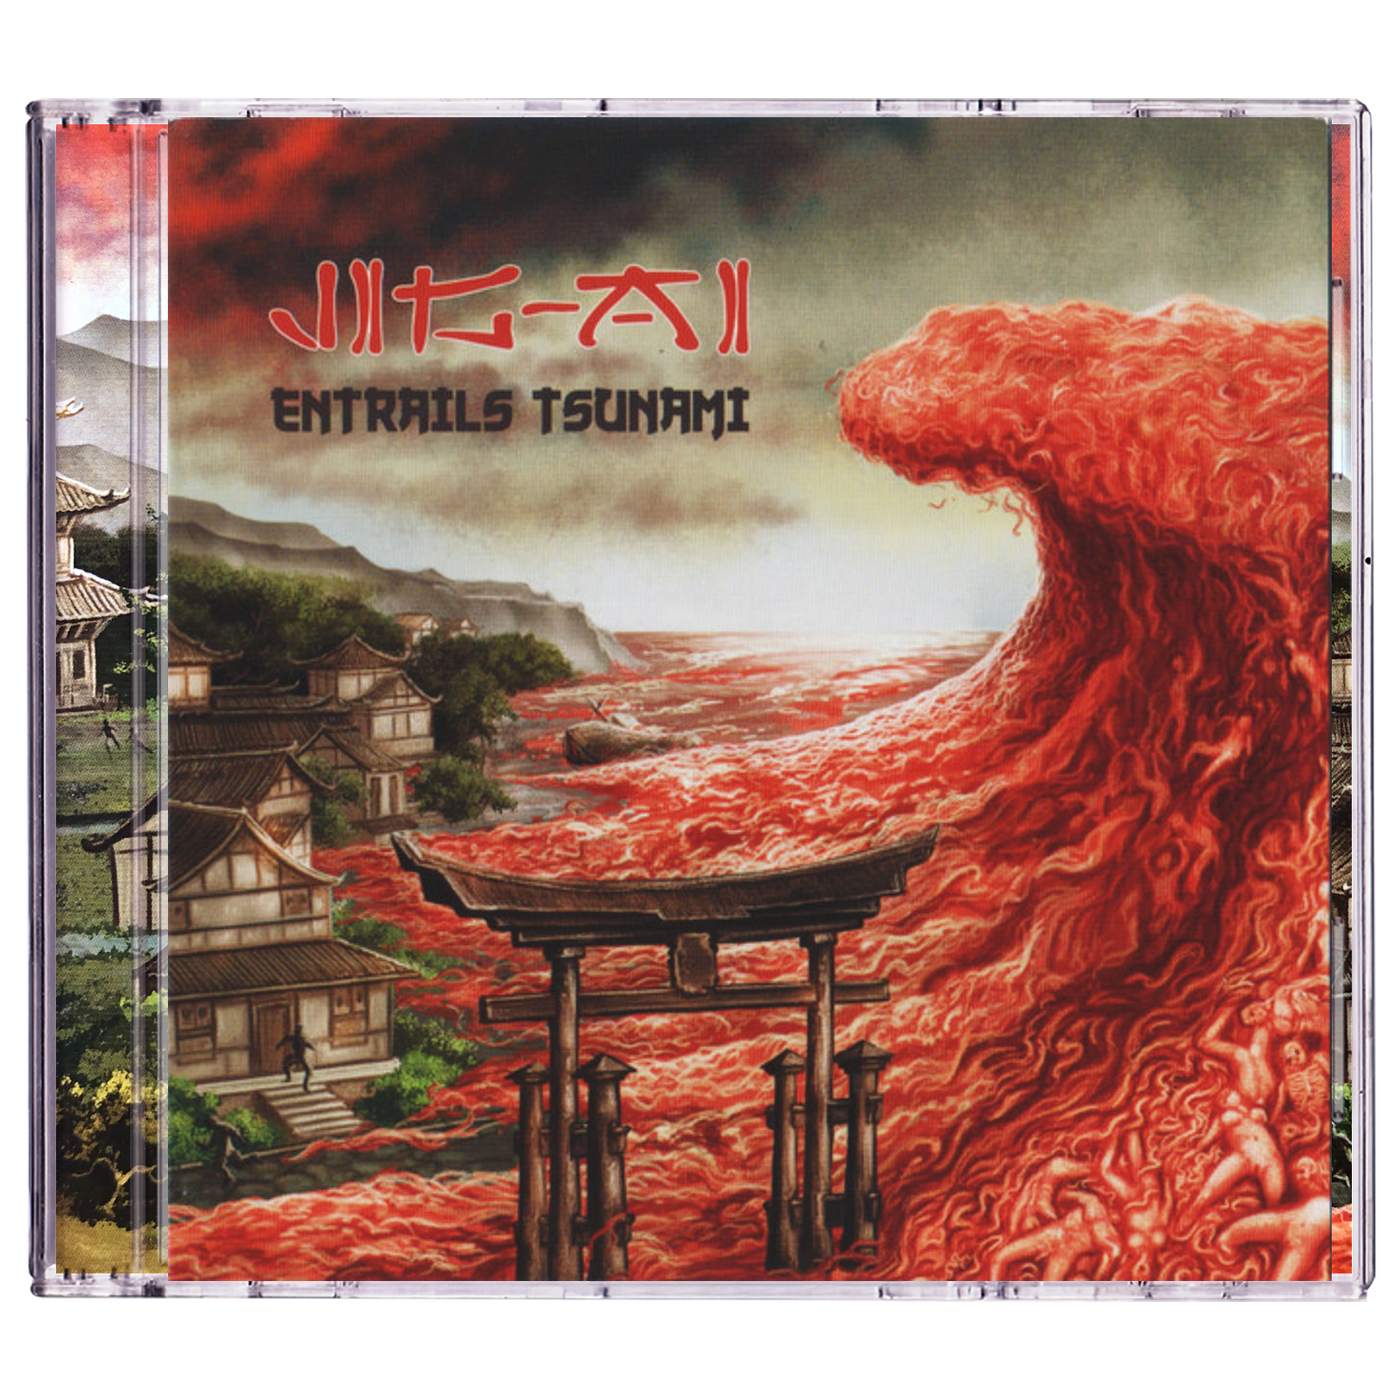 Jig-Ai 'Entrails Tsunami' CD